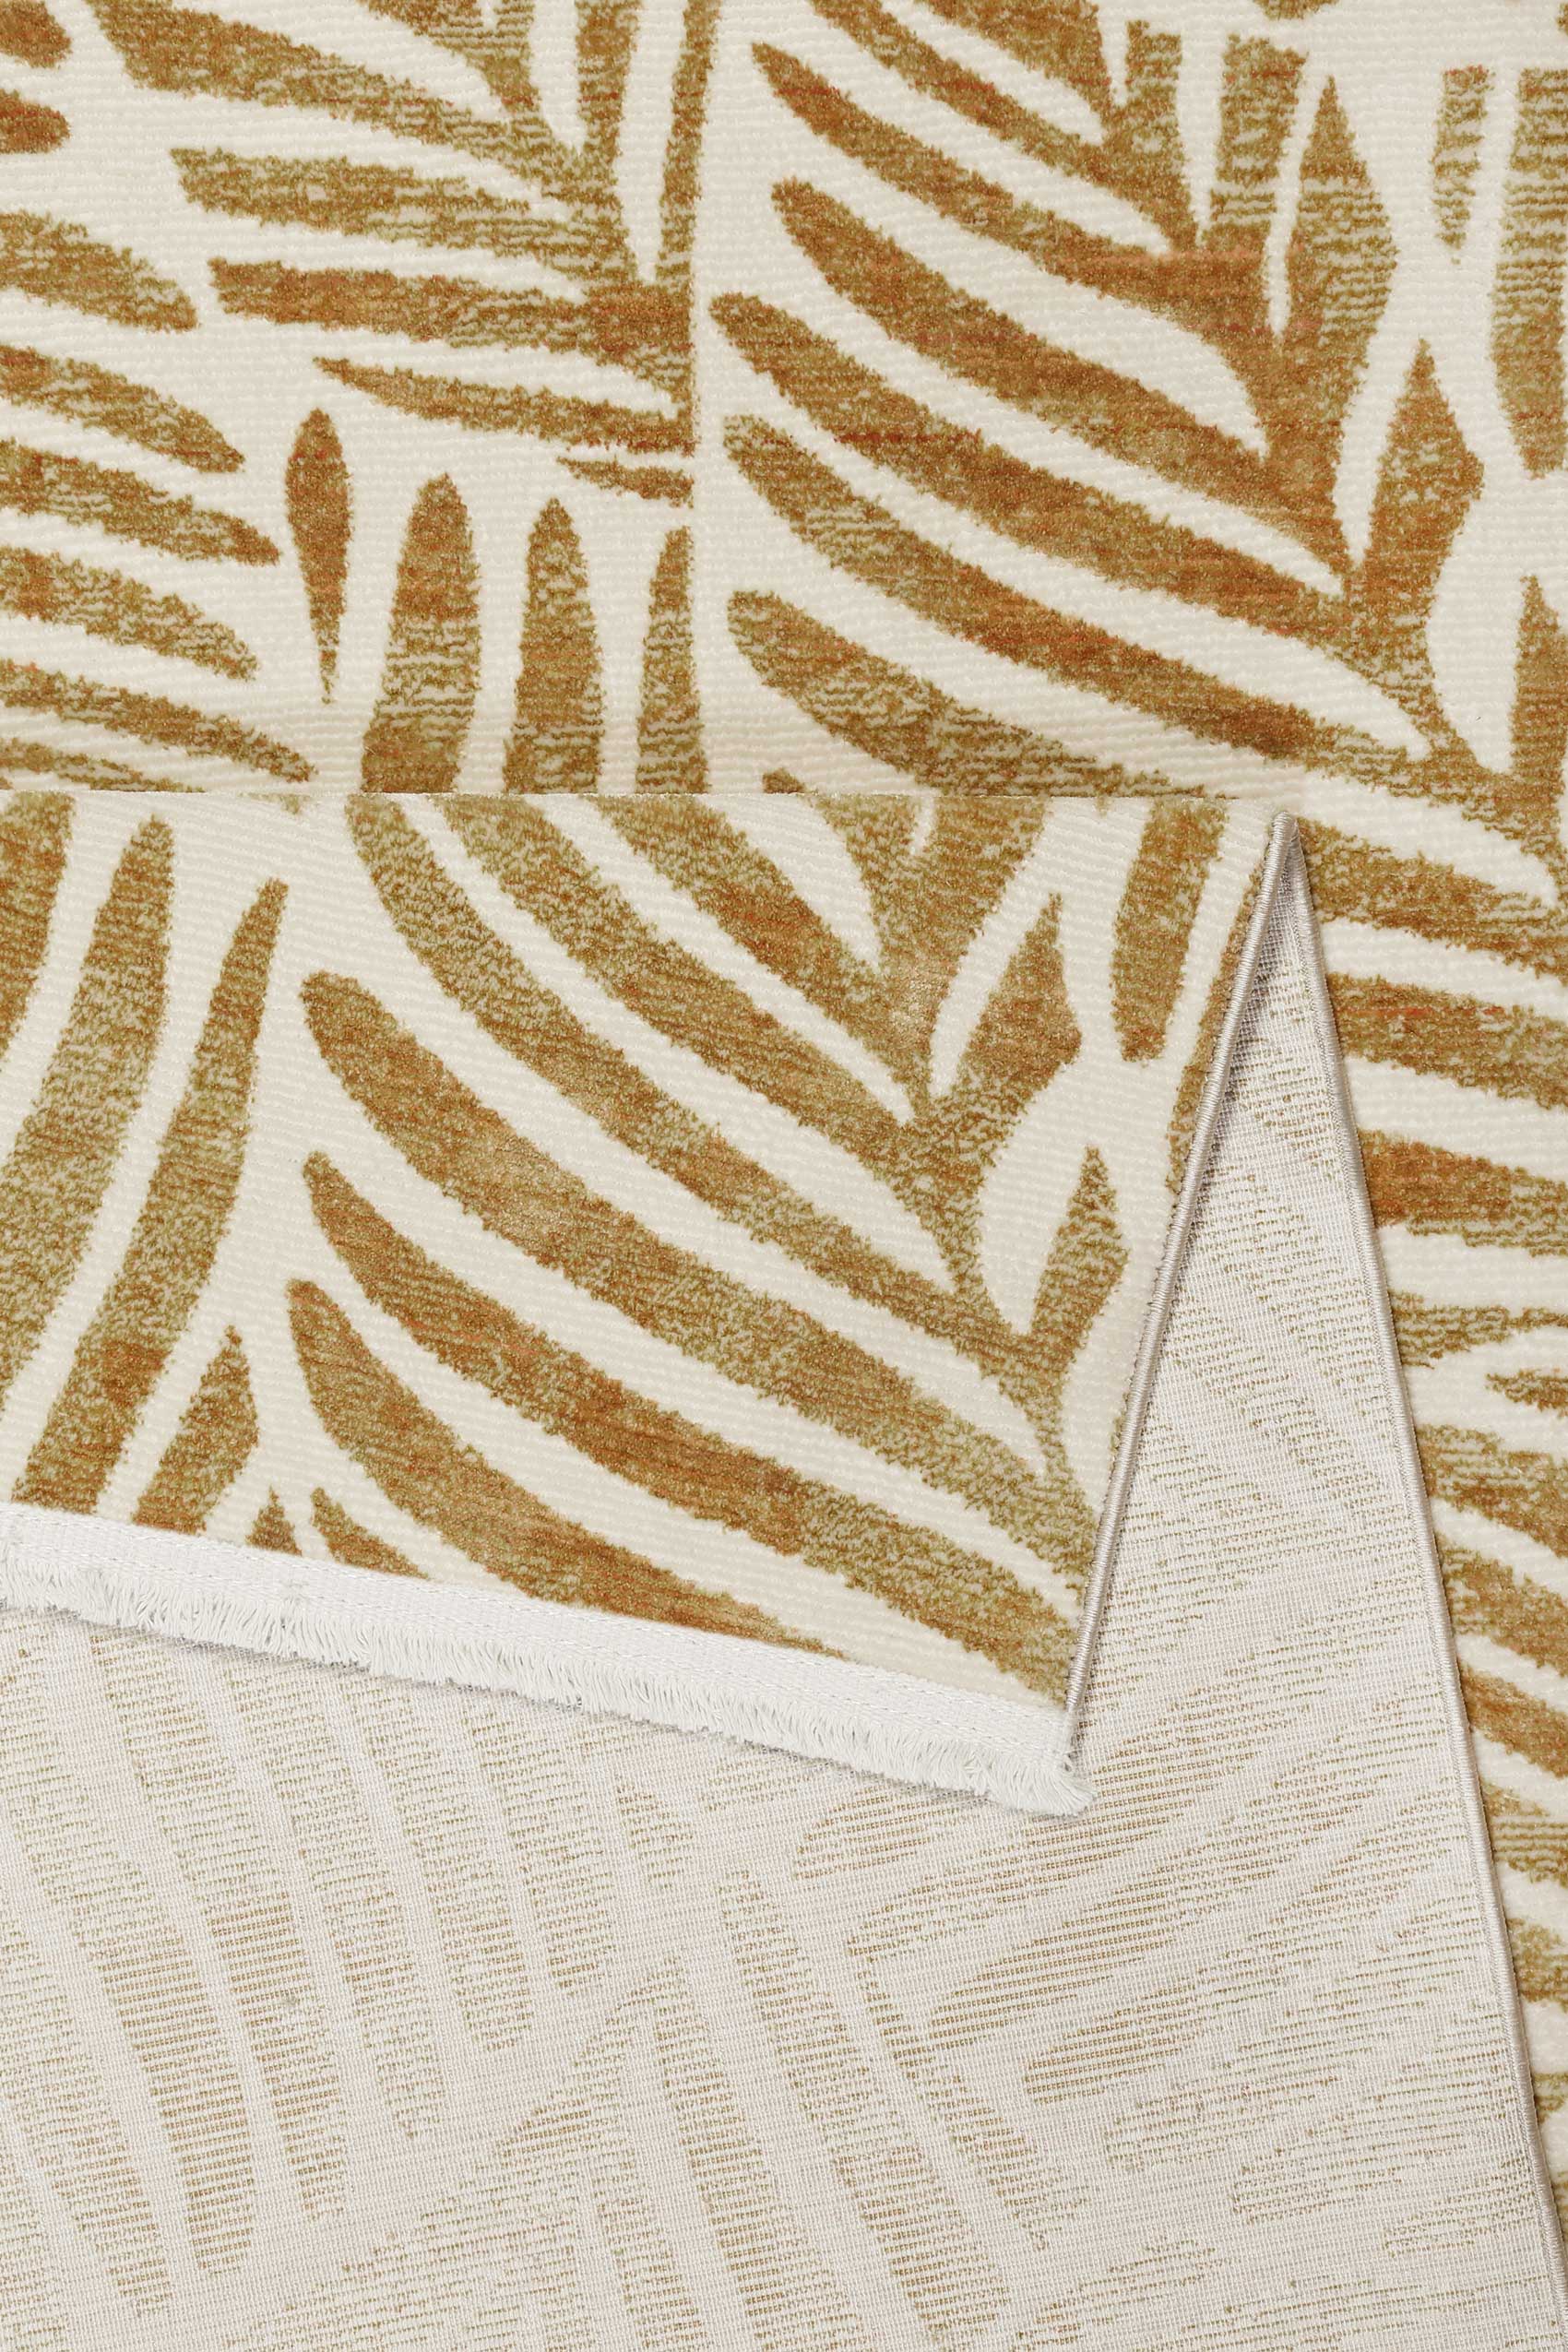 Esprit Teppich Creme Weiß Kupfer Gold meliert Kurzflor » Victoria « - Ansicht 3